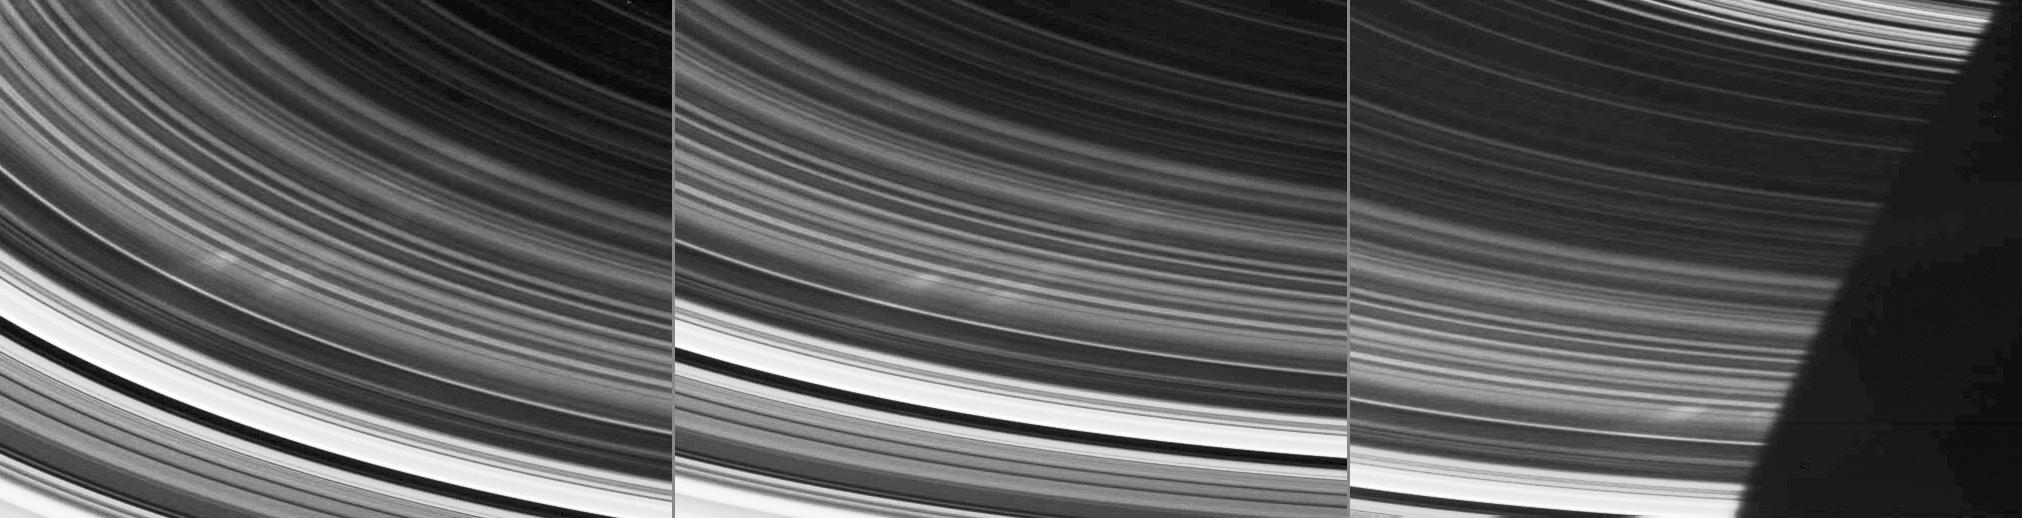 Pierścienie Saturna - nietypowe struktury